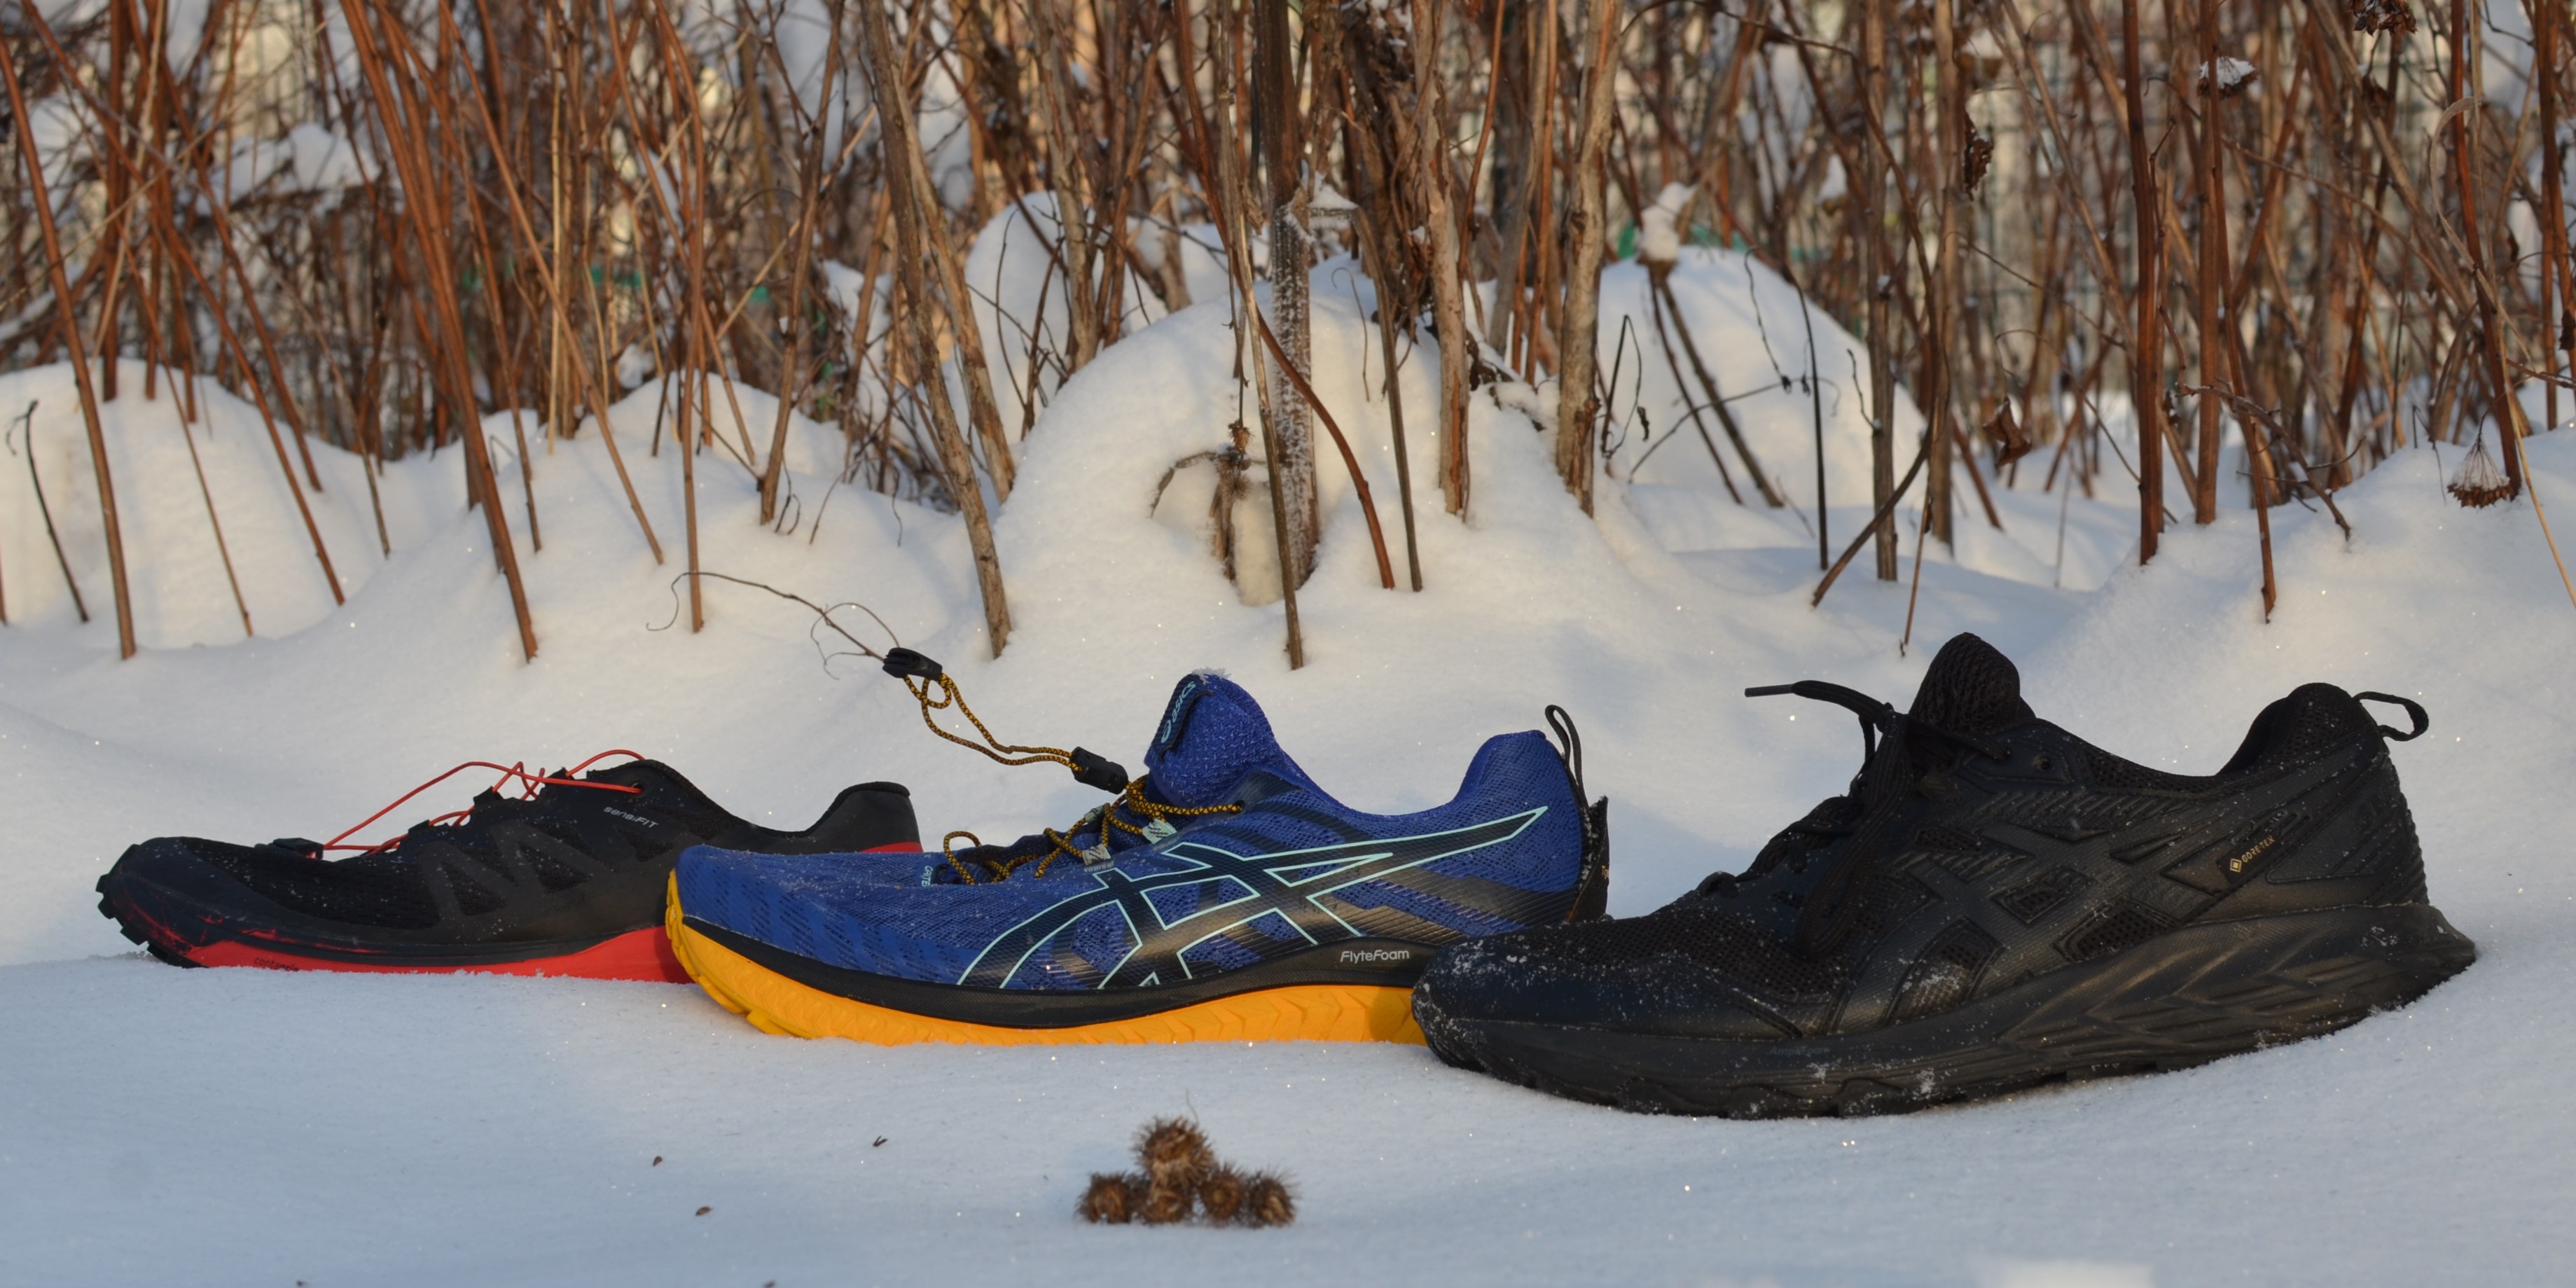 Трое из леса. Обзор самых актуальных трейловых беговых кроссовок зимы2021/22 — интернет-портал Спортмастер Медиа